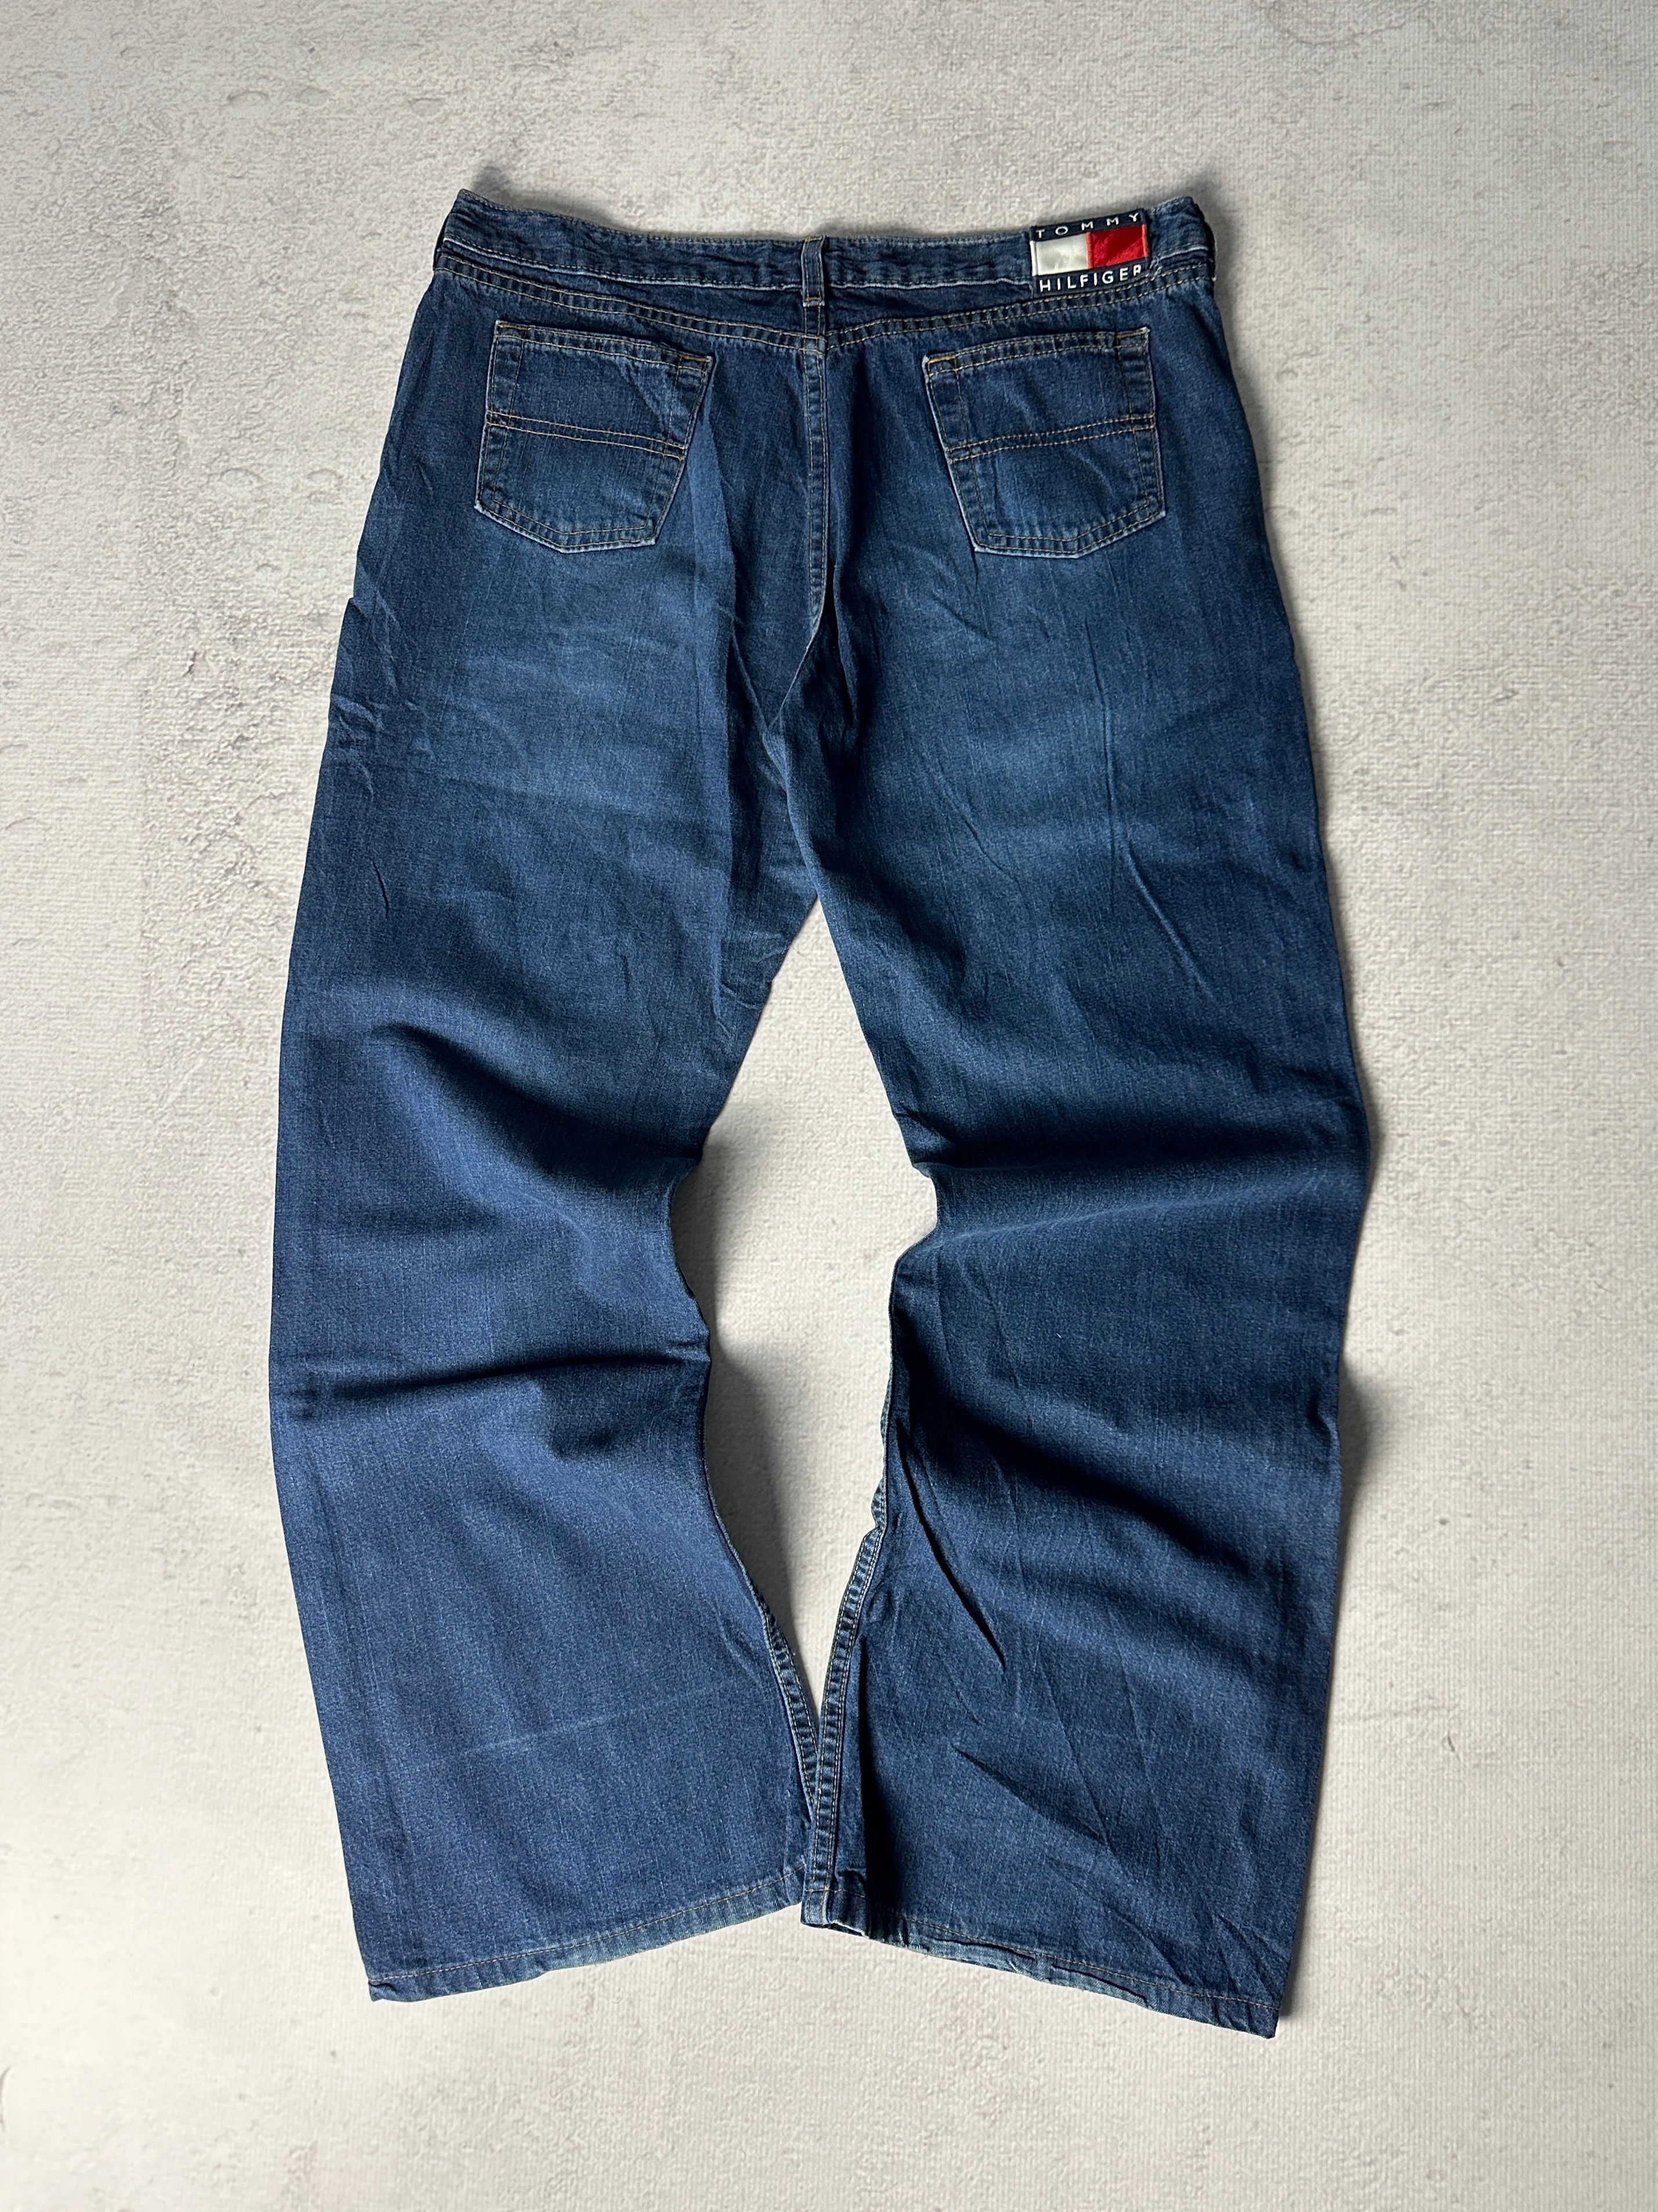 Vintage Tommy Hilfiger Jeans - Women's 36W31L